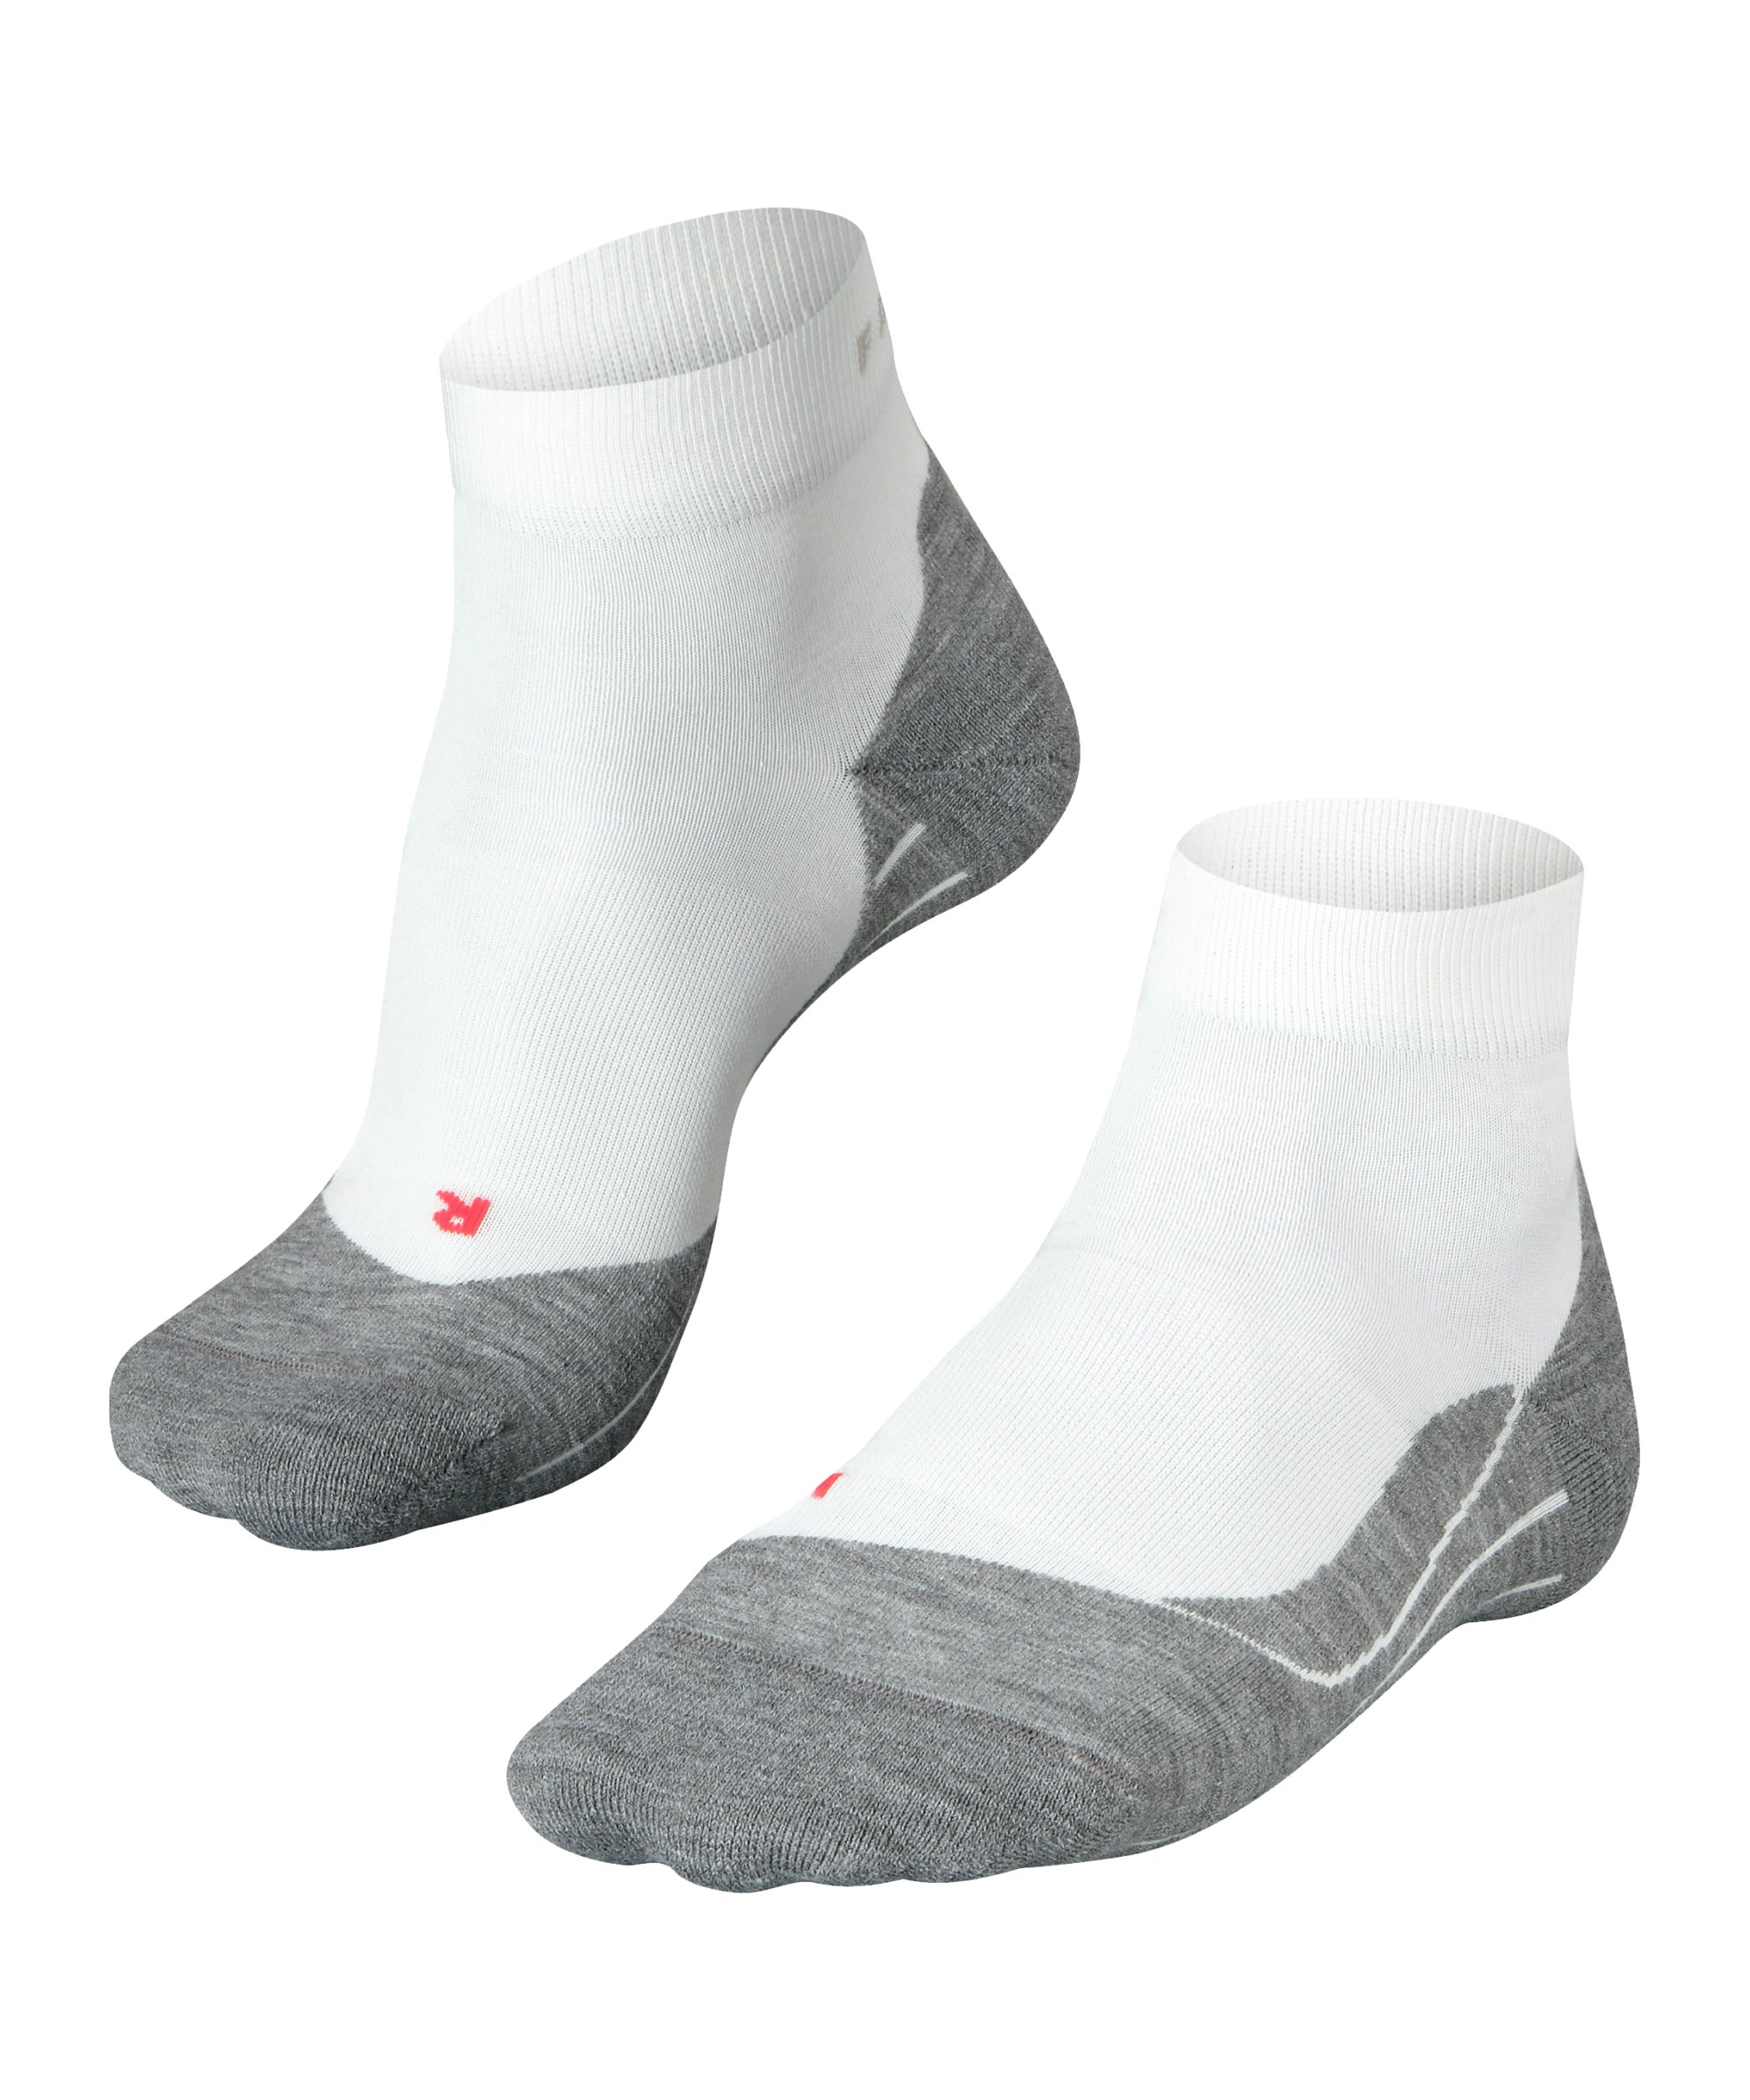 FALKE RU4 Short Socken Damen Weiss F2020 - weiss